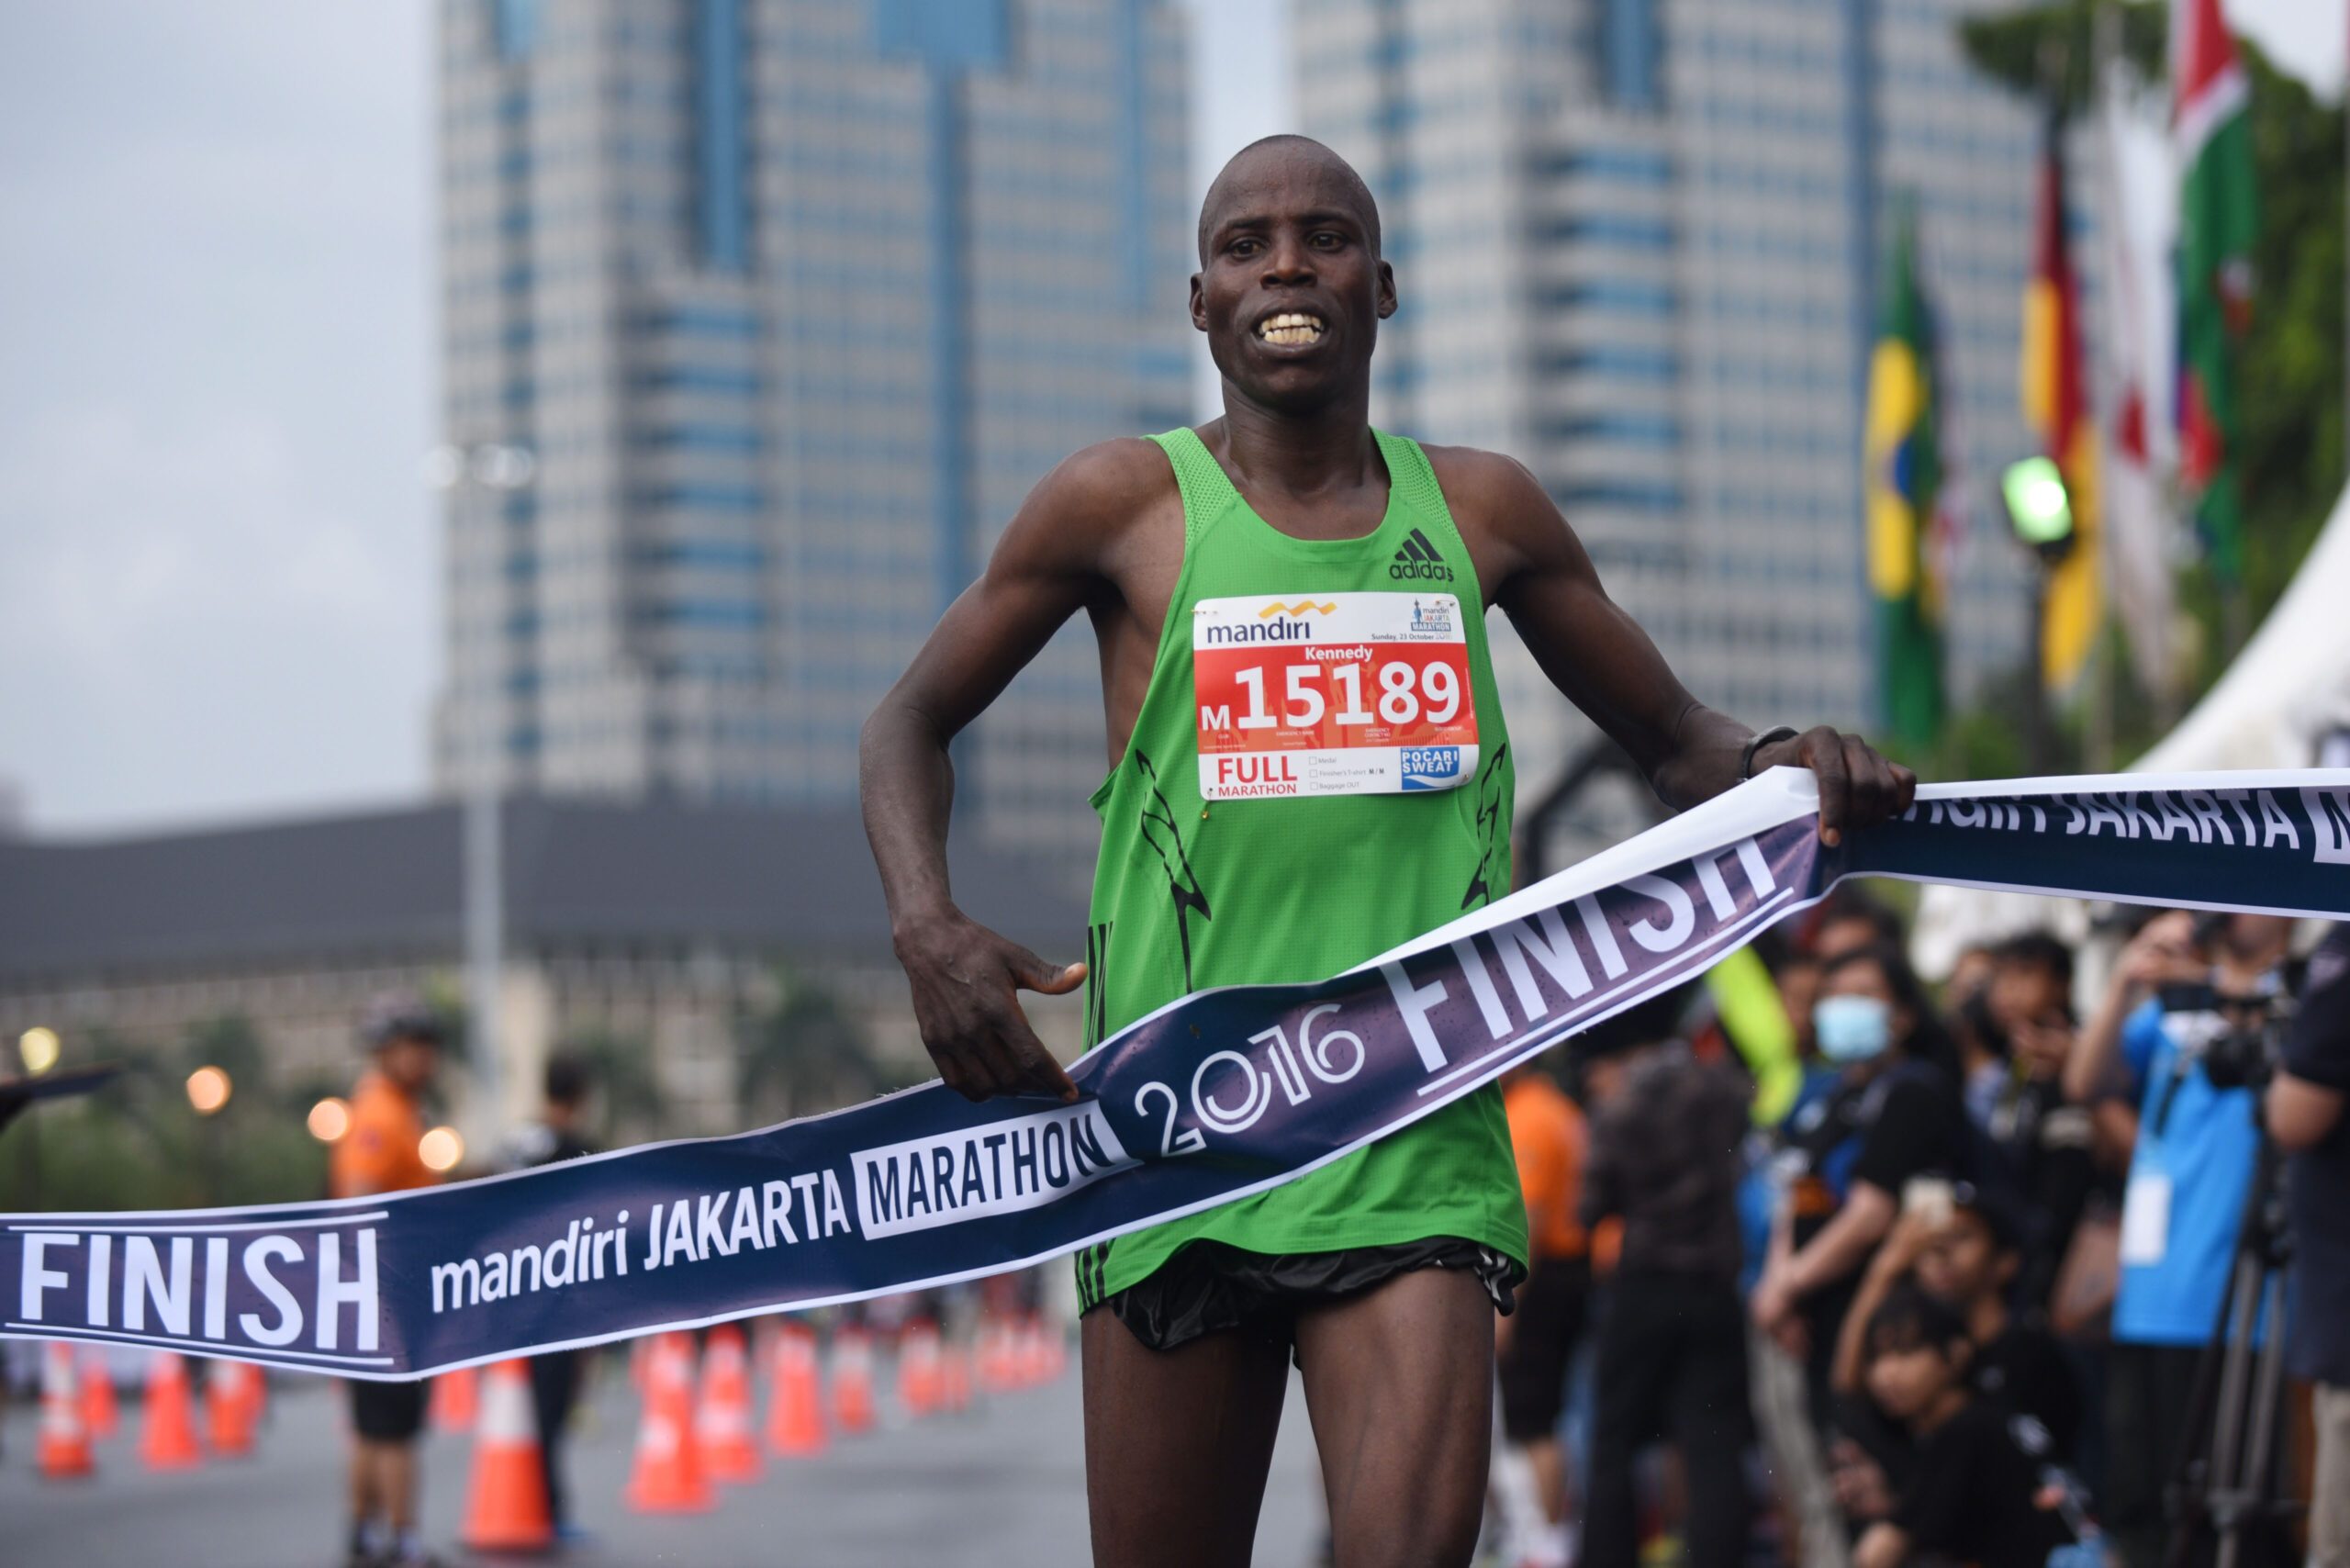 Pemenang Jakarta Marathon kecewa hadiah uang tahun ini lebih kecil